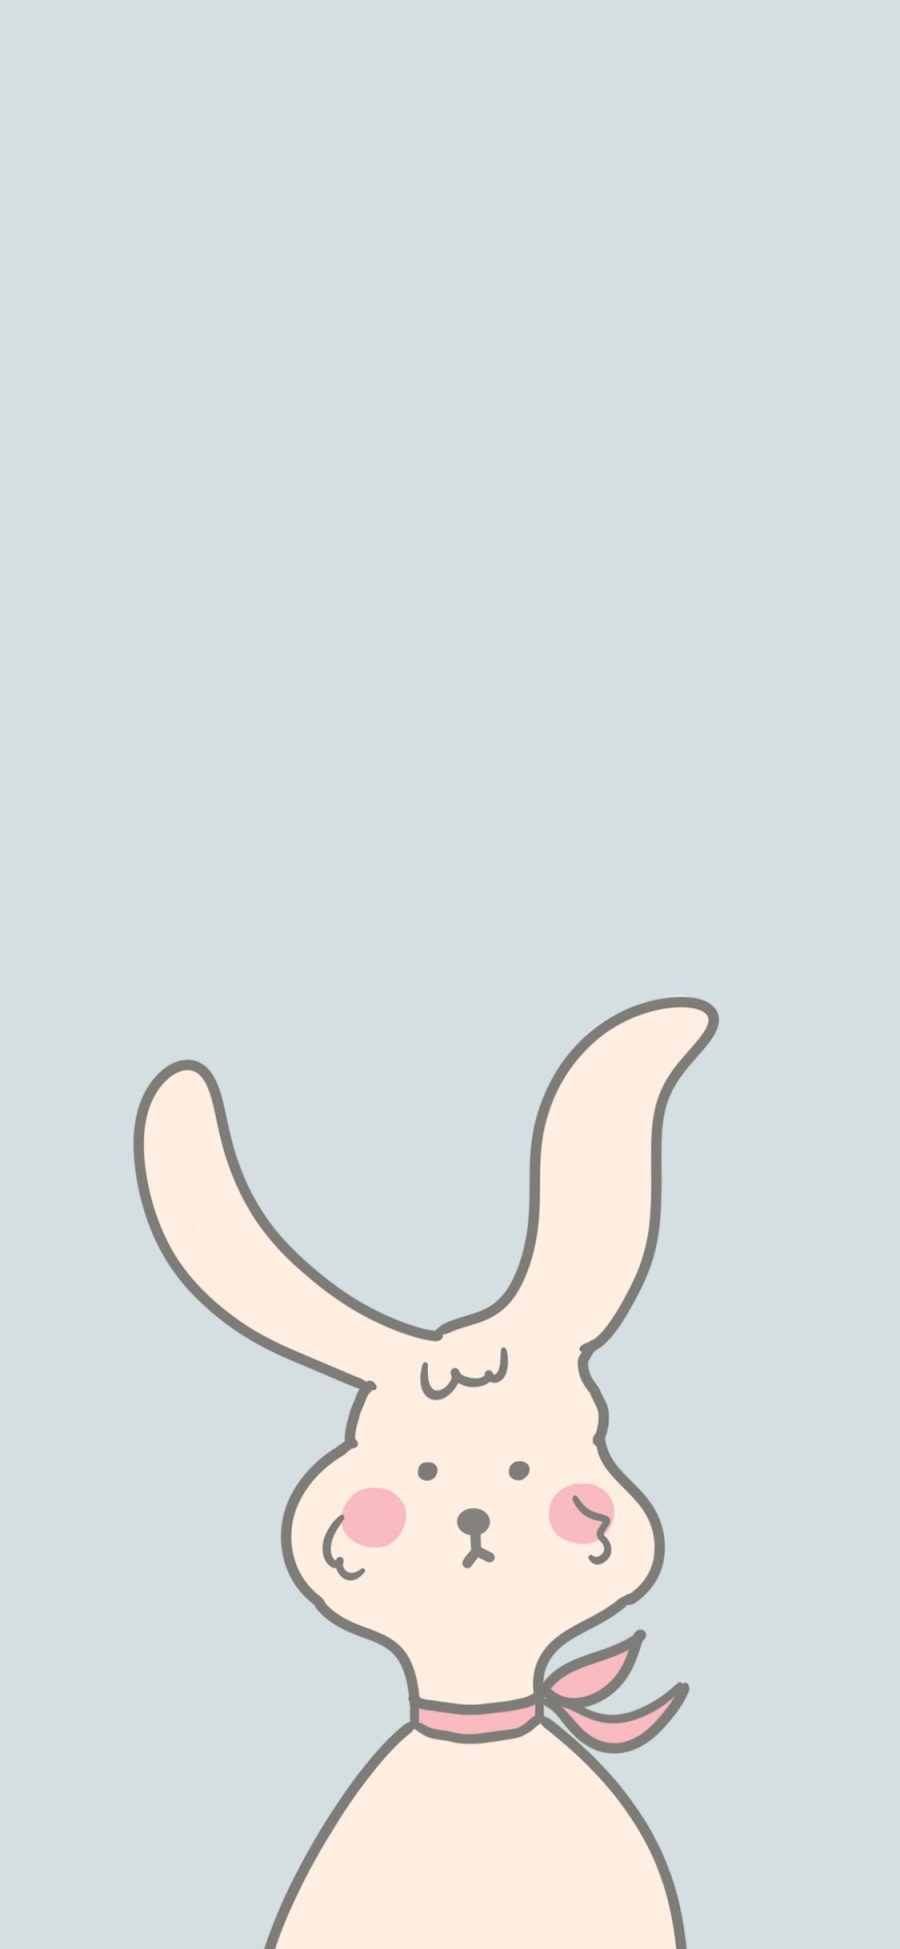 [2436×1125]可爱 兔子 简约 简笔画 苹果手机动漫壁纸图片